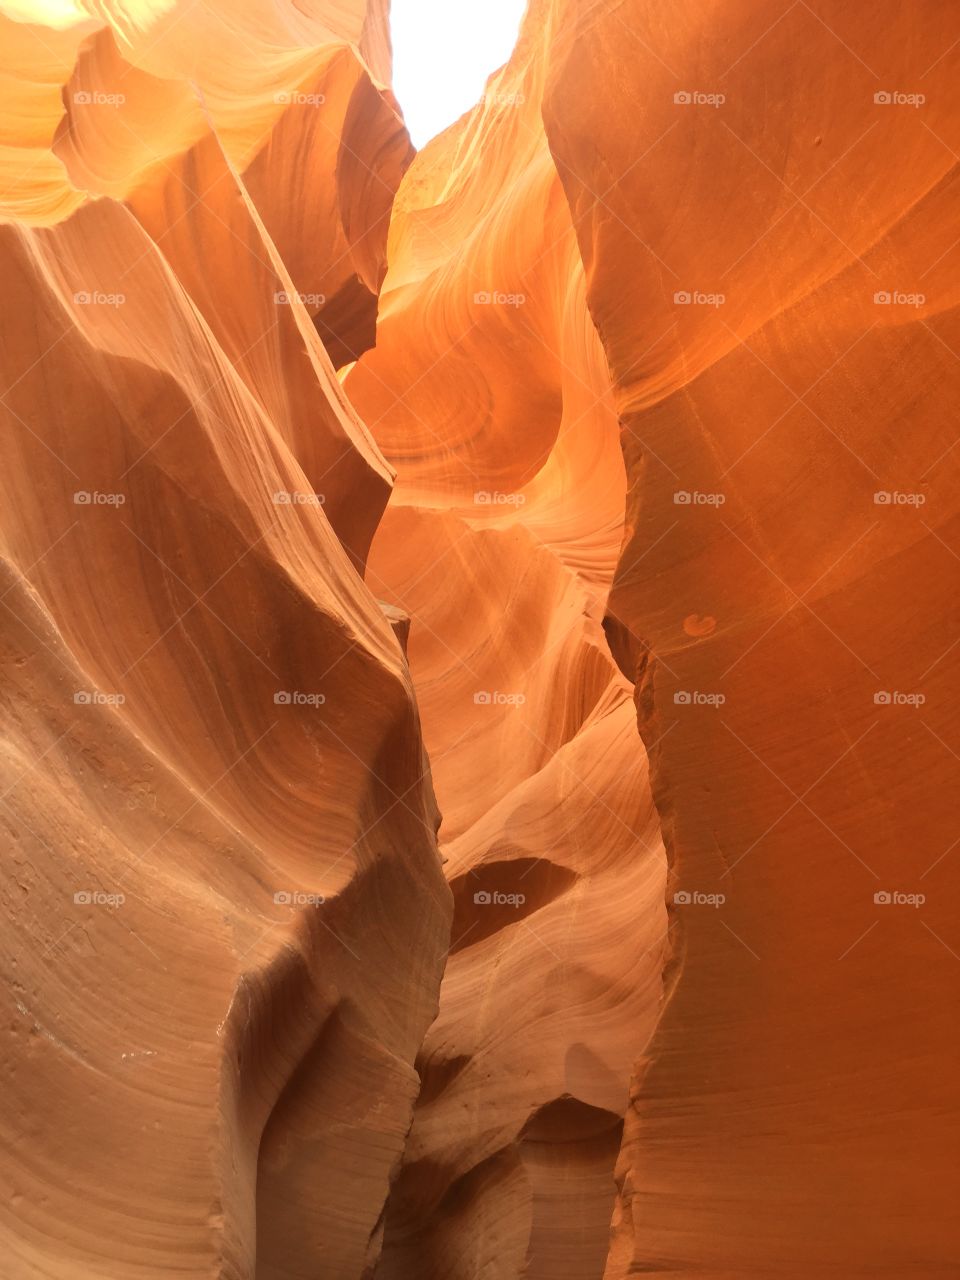 Amazing views!!! Lower Antelope Canyon - Page, Arizona